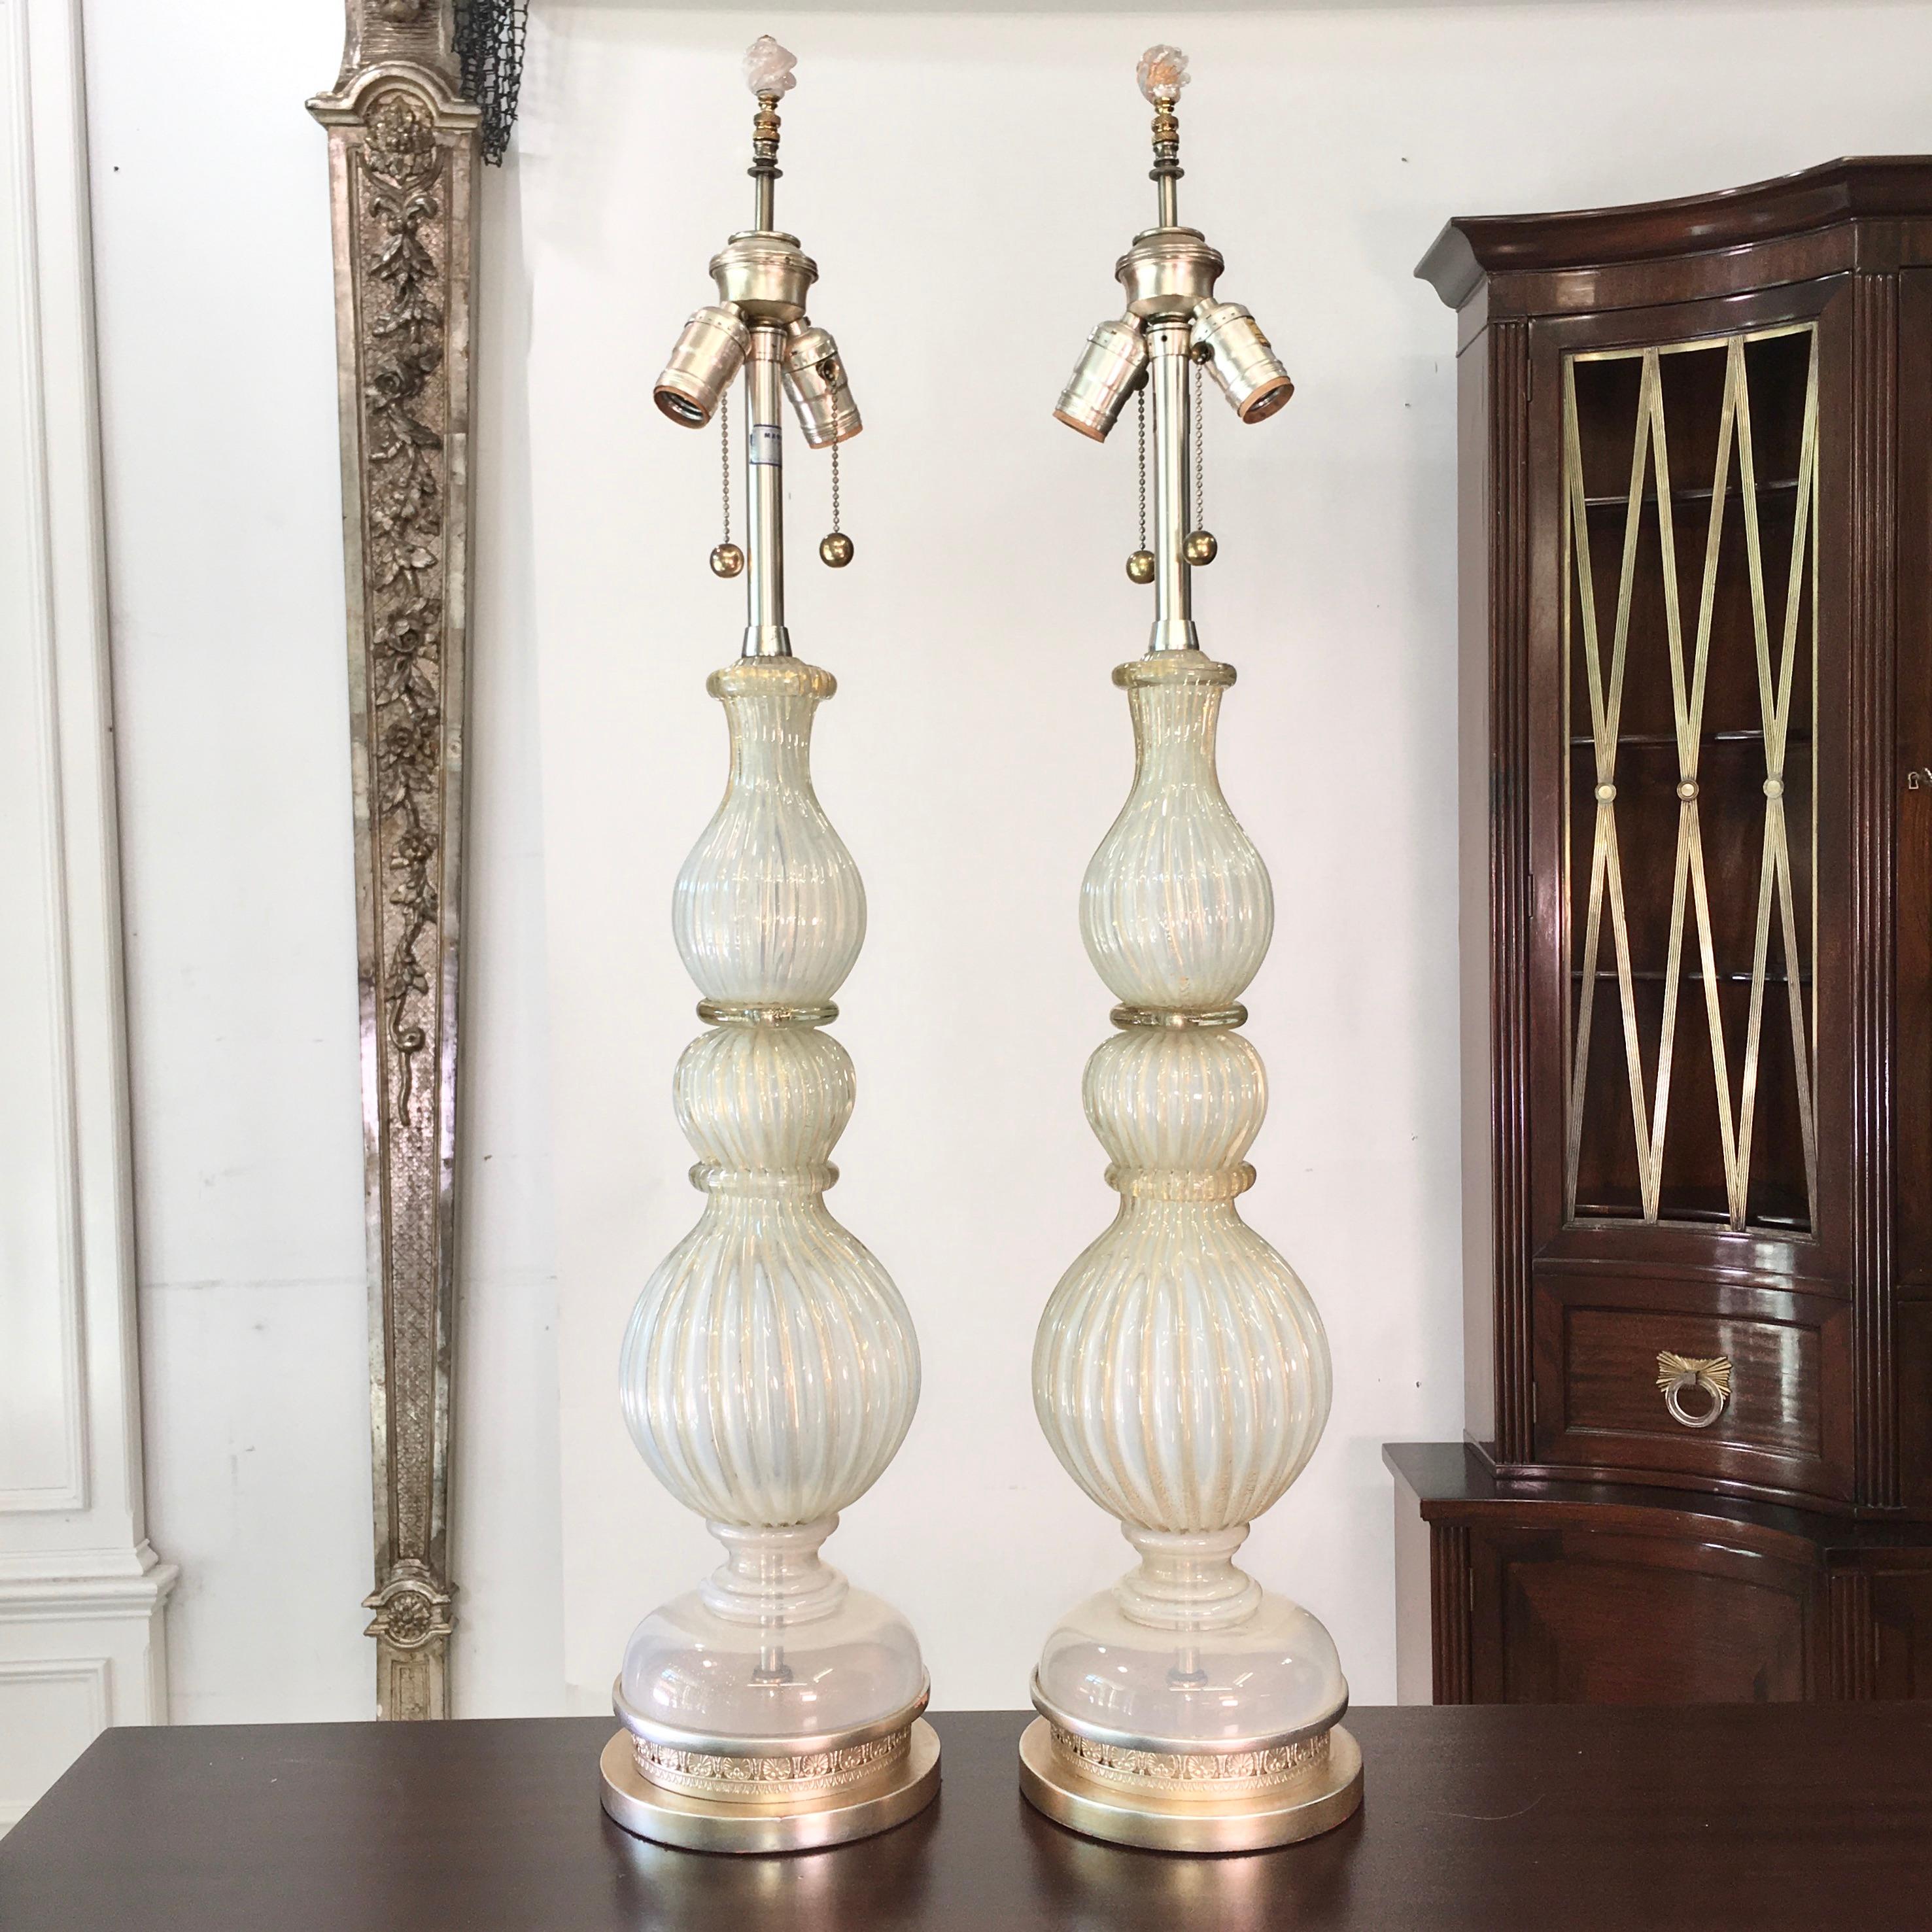 Paire de lampes de table originales de grande taille en verre de Murano par Archimede Seguso, importées par The Marbro Lamp Co. vers 1960. Les deux lampes sont signées. 
Verre blanc argenté opalescent nervuré et moucheté d'or. Les bases ont été